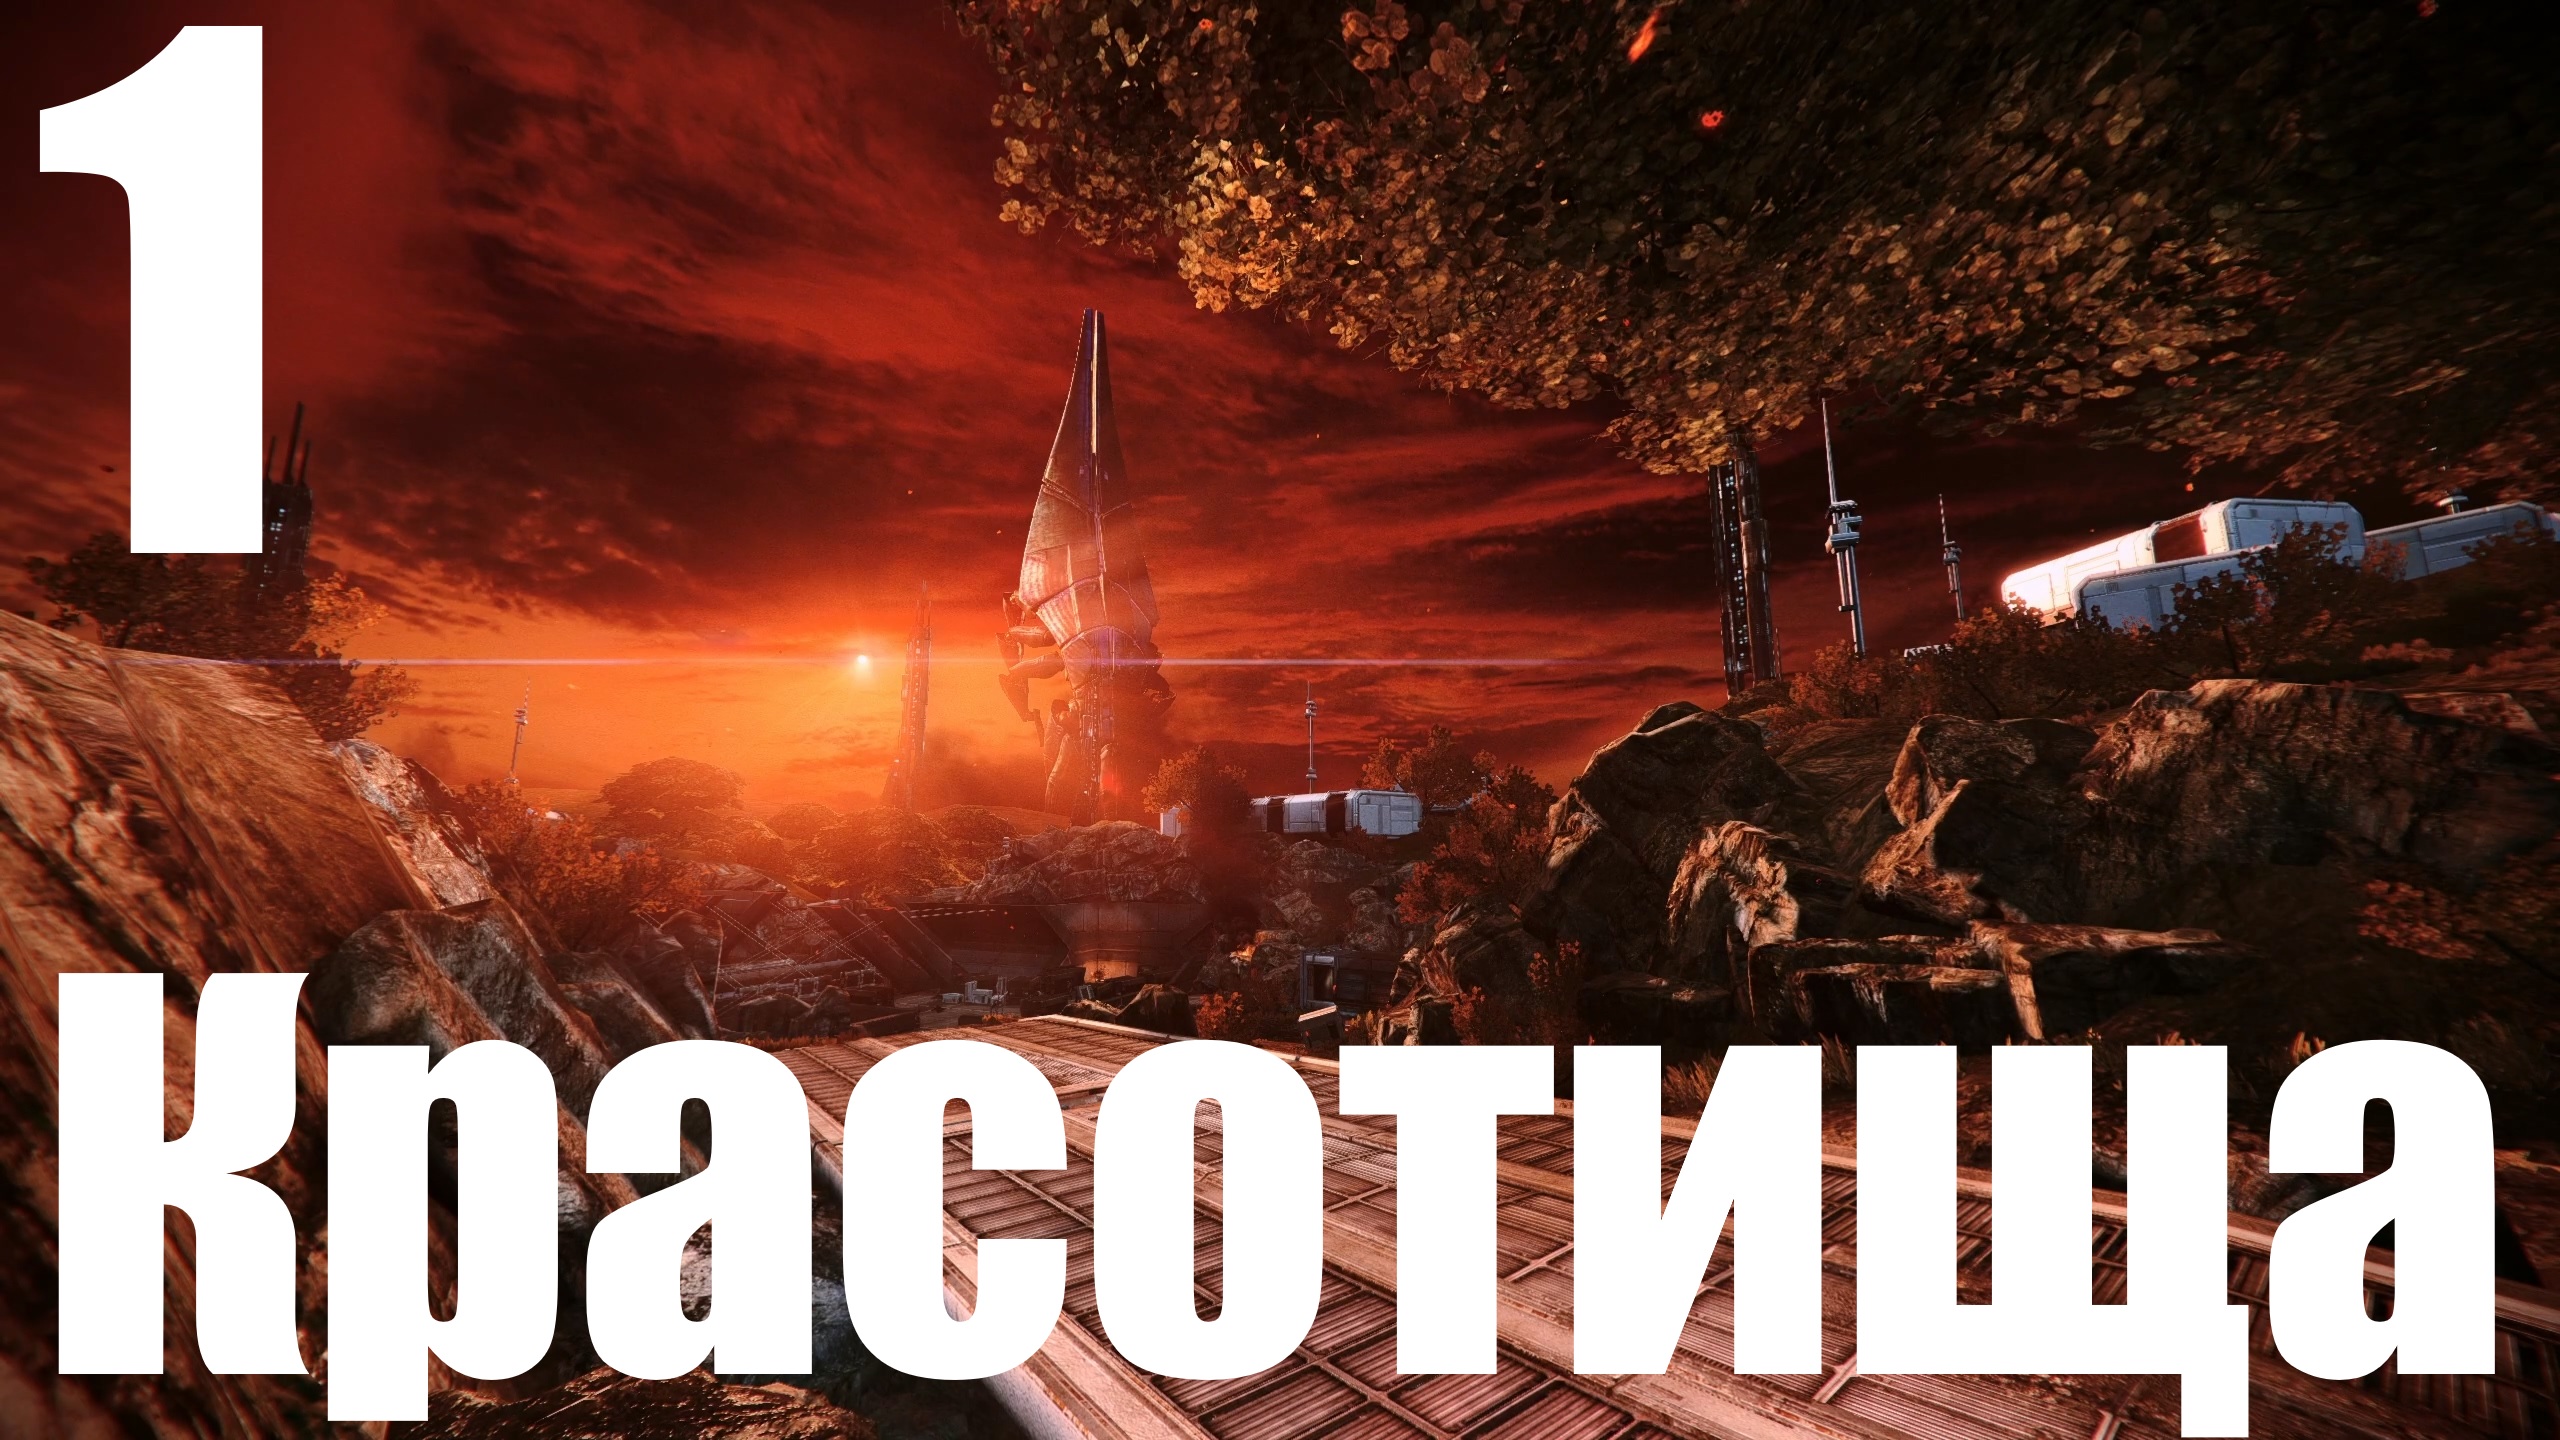 Прохождение игры Mass Effect - LEcalibrated Edition №1 - Красотища